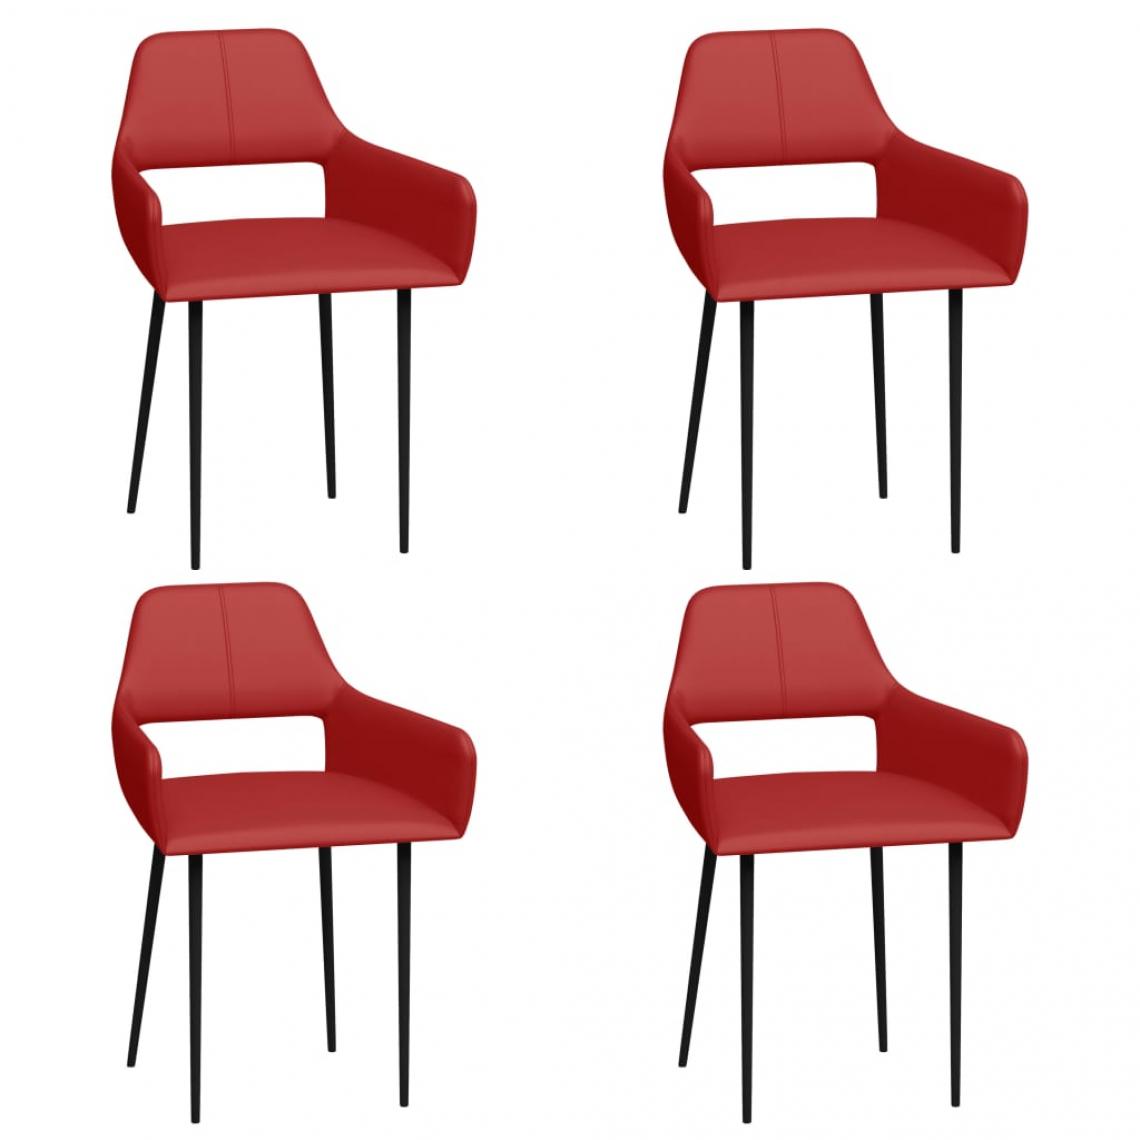 Decoshop26 - Lot de 4 chaises de salle à manger cuisine design moderne similicuir rouge CDS021973 - Chaises